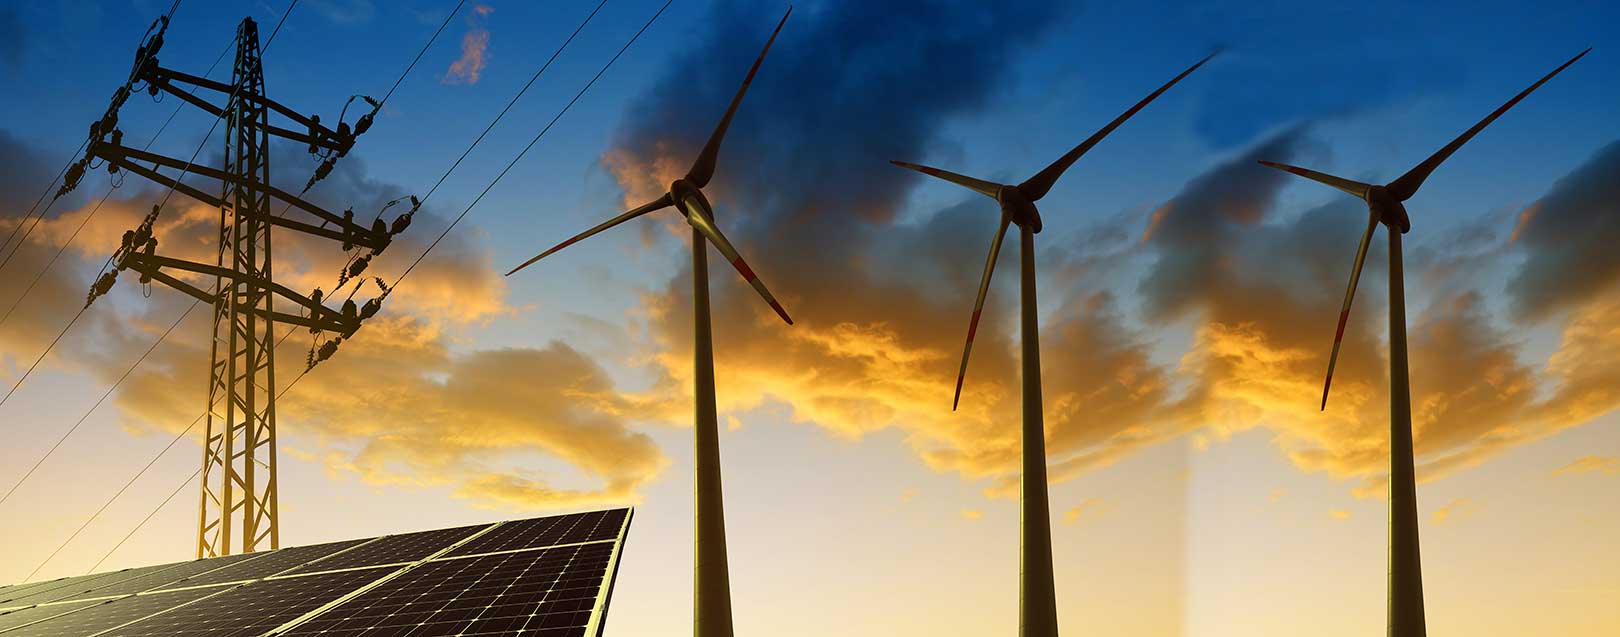 GFA on renewable energy between India and UAE